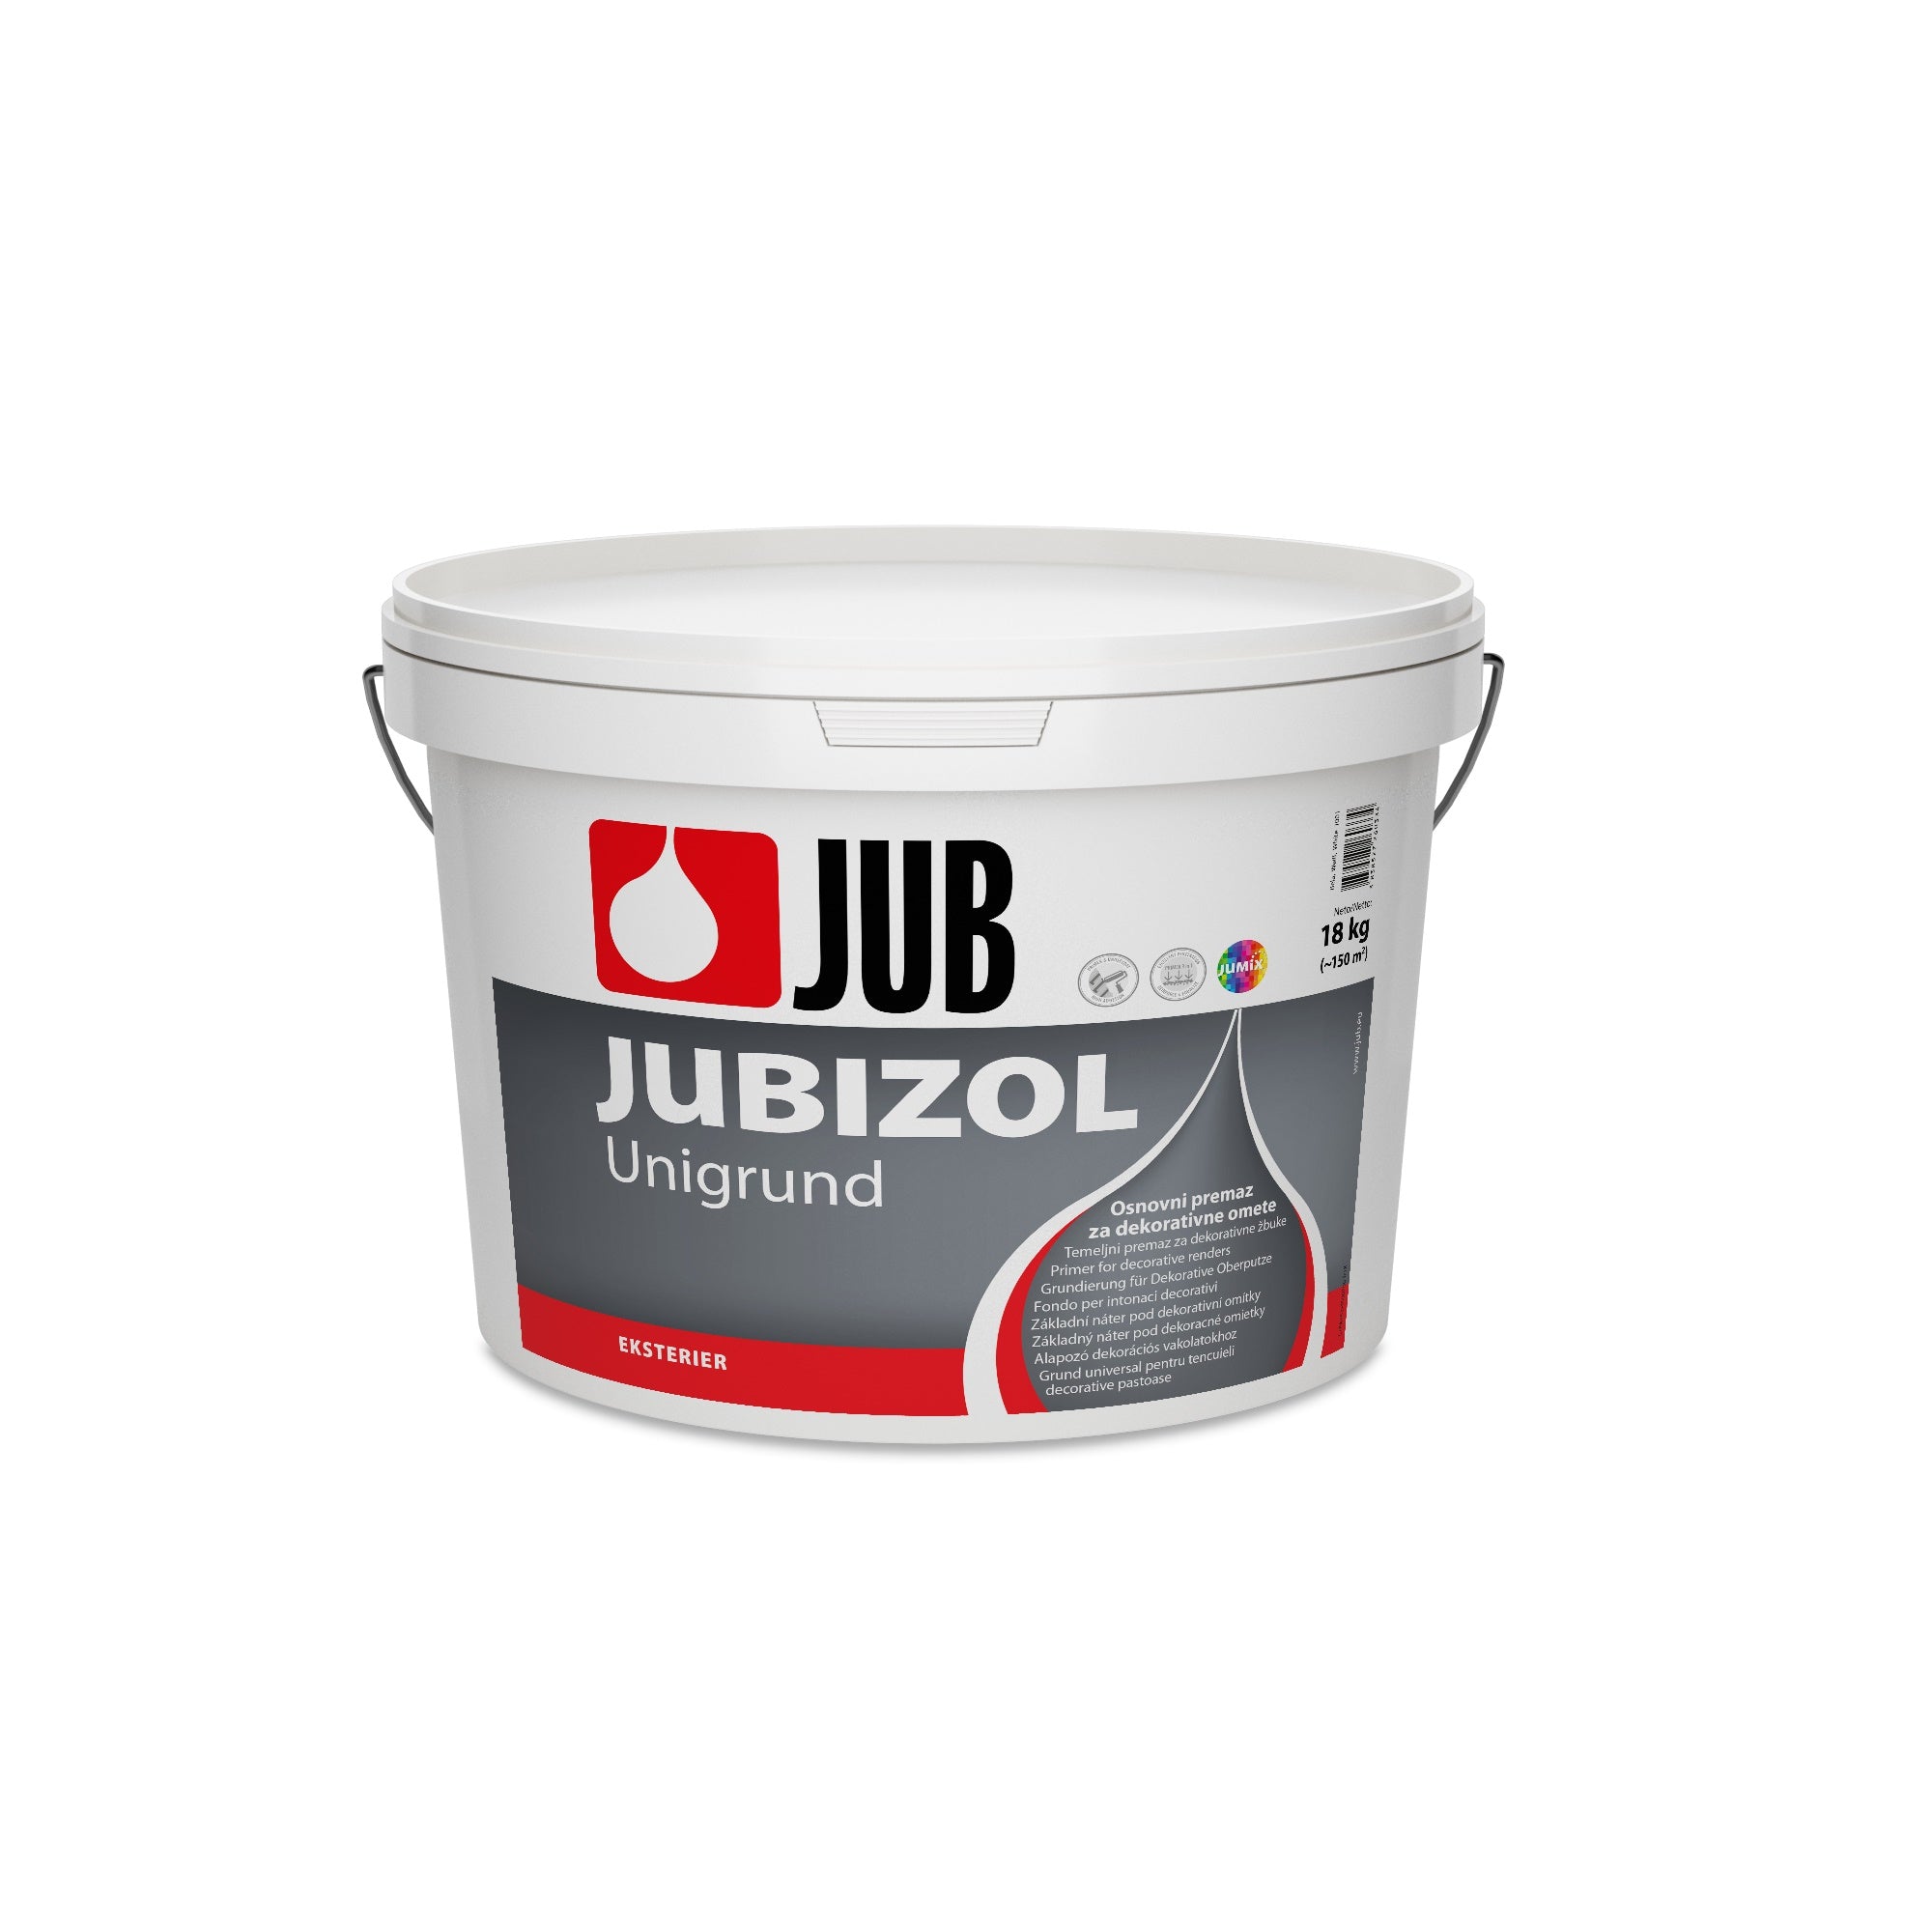 JUB JUBIZOL Unigrund bílý univerzální základní nátěr 18 kg